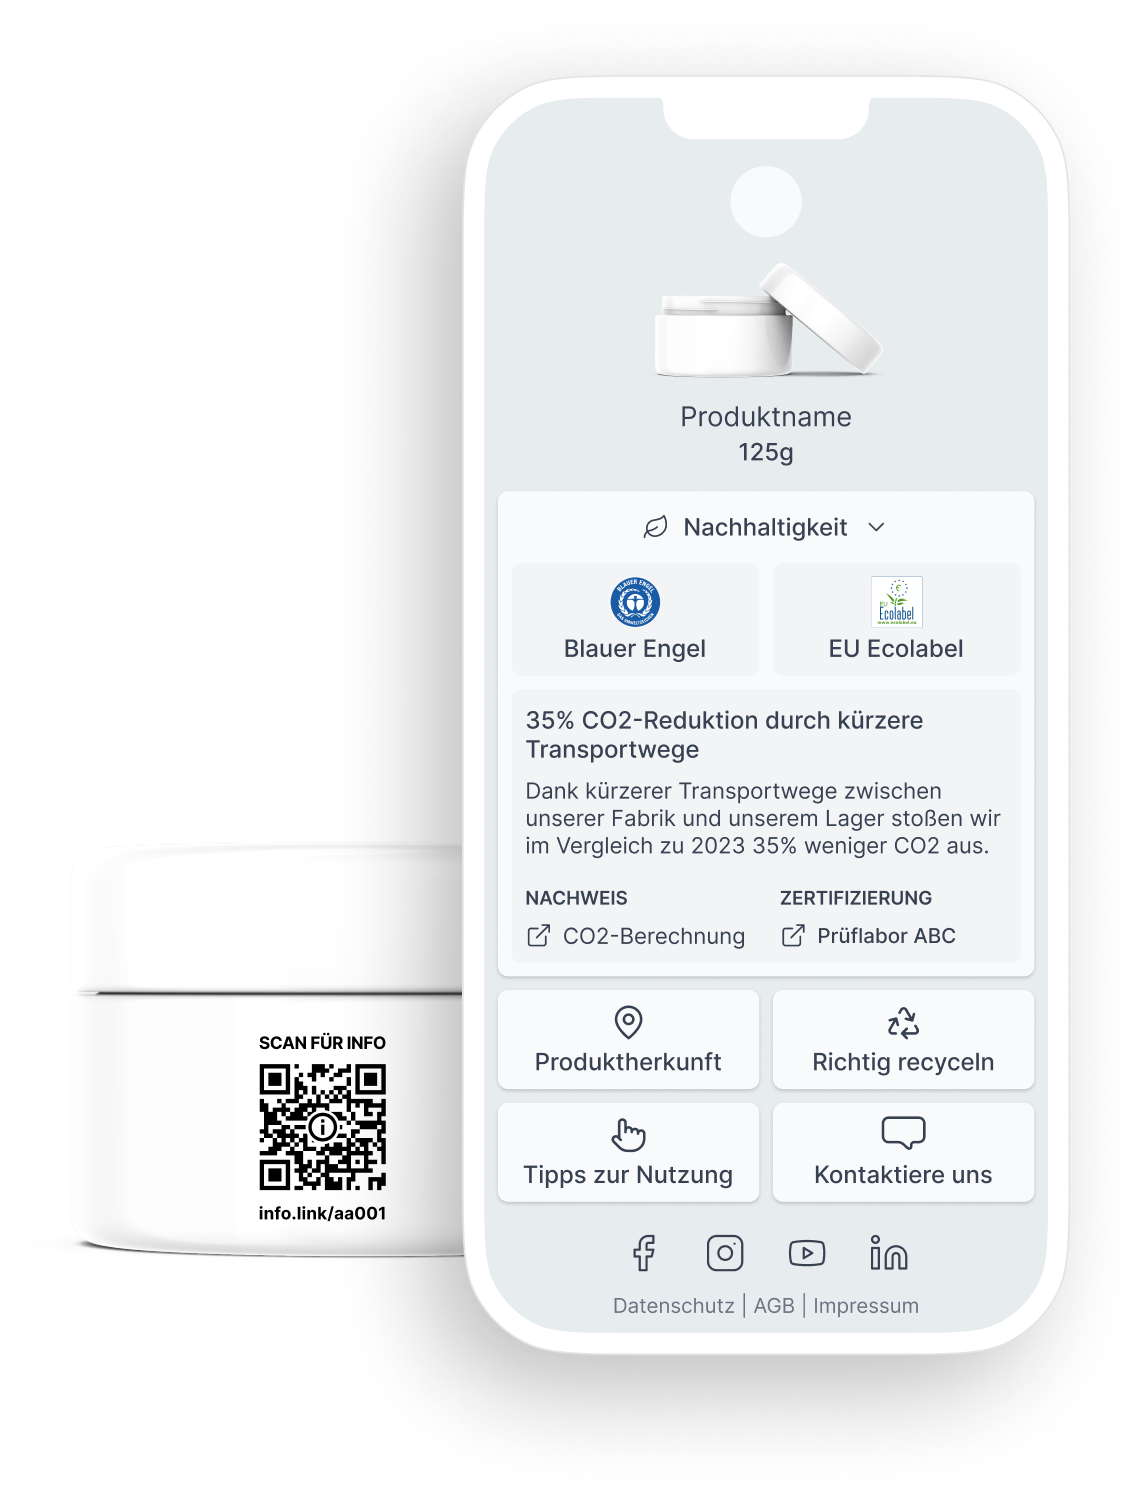 Bild von Produkt mit QR-Code und rechtskonformer info.link Seite auf einem Smartphone